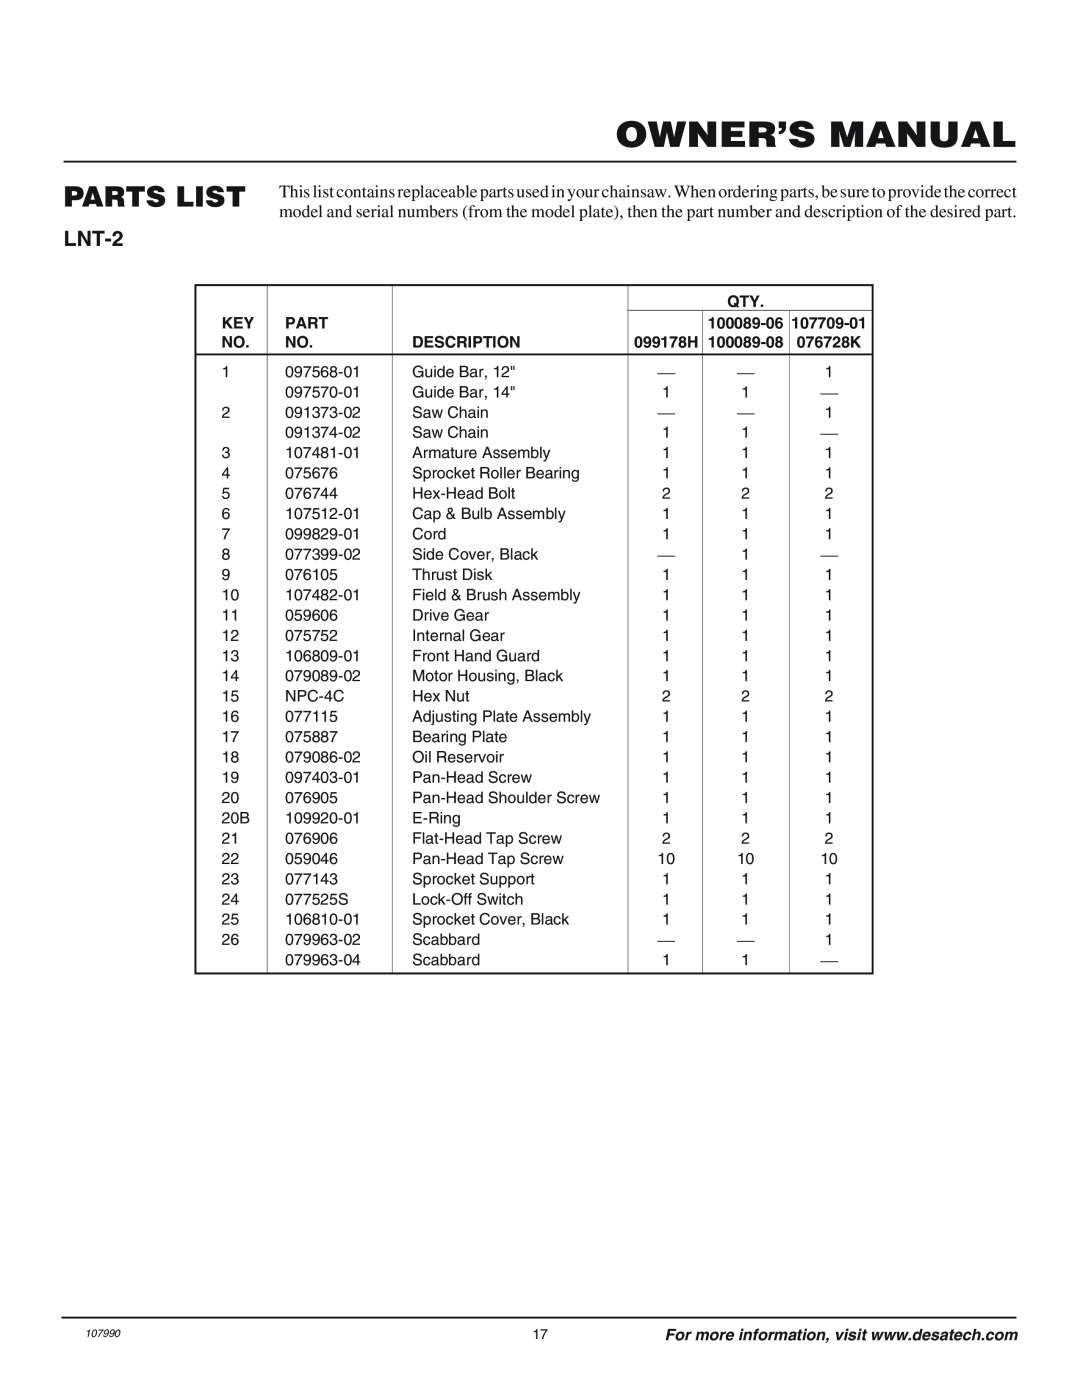 Remington owner manual Parts List, Owner’S Manual, LNT-2, 100089-06, Description 